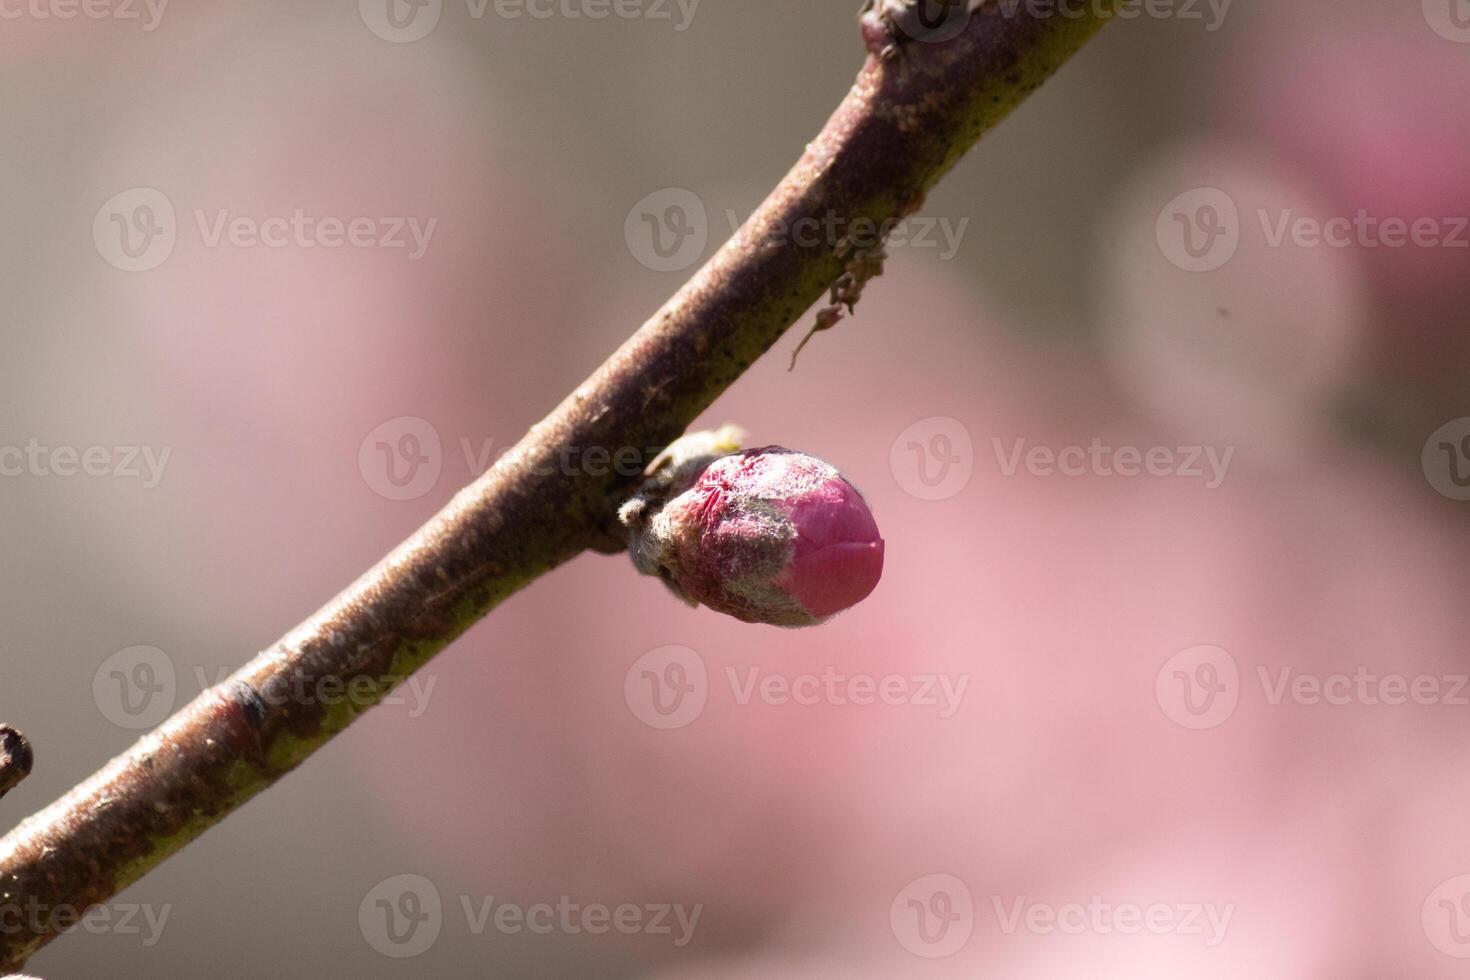 cette peu pêche arbre fleur bourgeon est avoir prêt à ouvert. il est marque Nouveau et avoir prêt à pop dans le printemps saison. je l'amour le rose Couleur de il permanent en dehors de le marron branche. photo